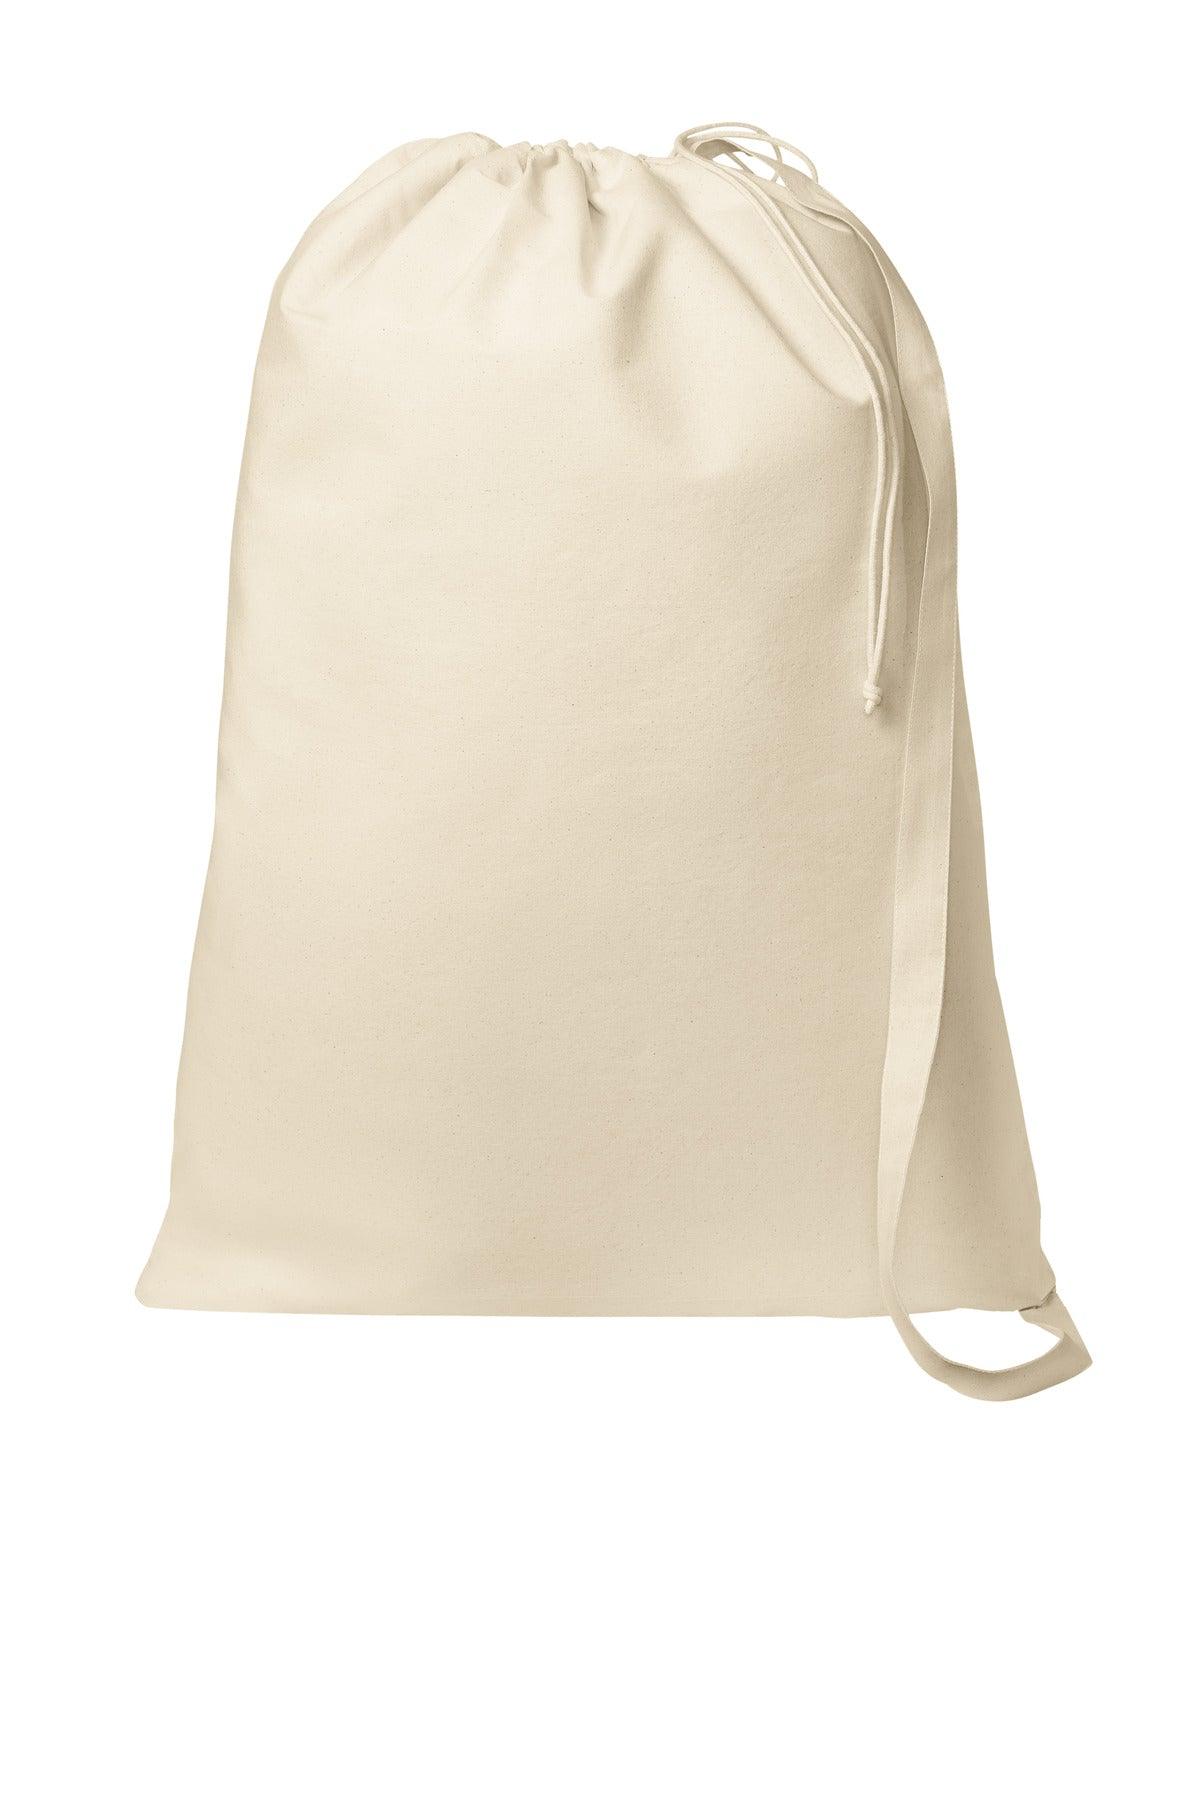 Port Authority Core Cotton Laundry Bag BG0850 - Dresses Max